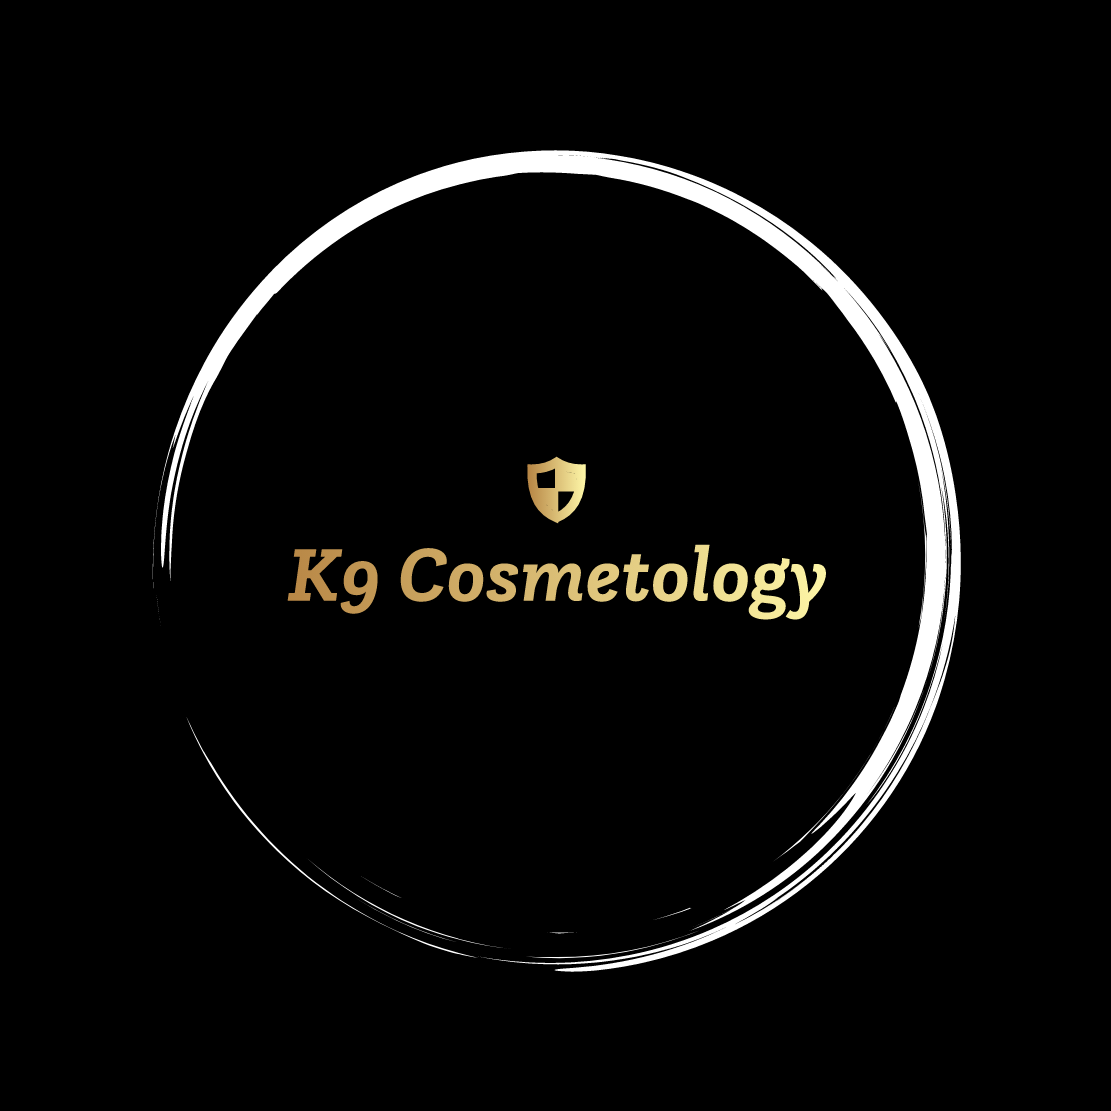 K9 Cosmetology